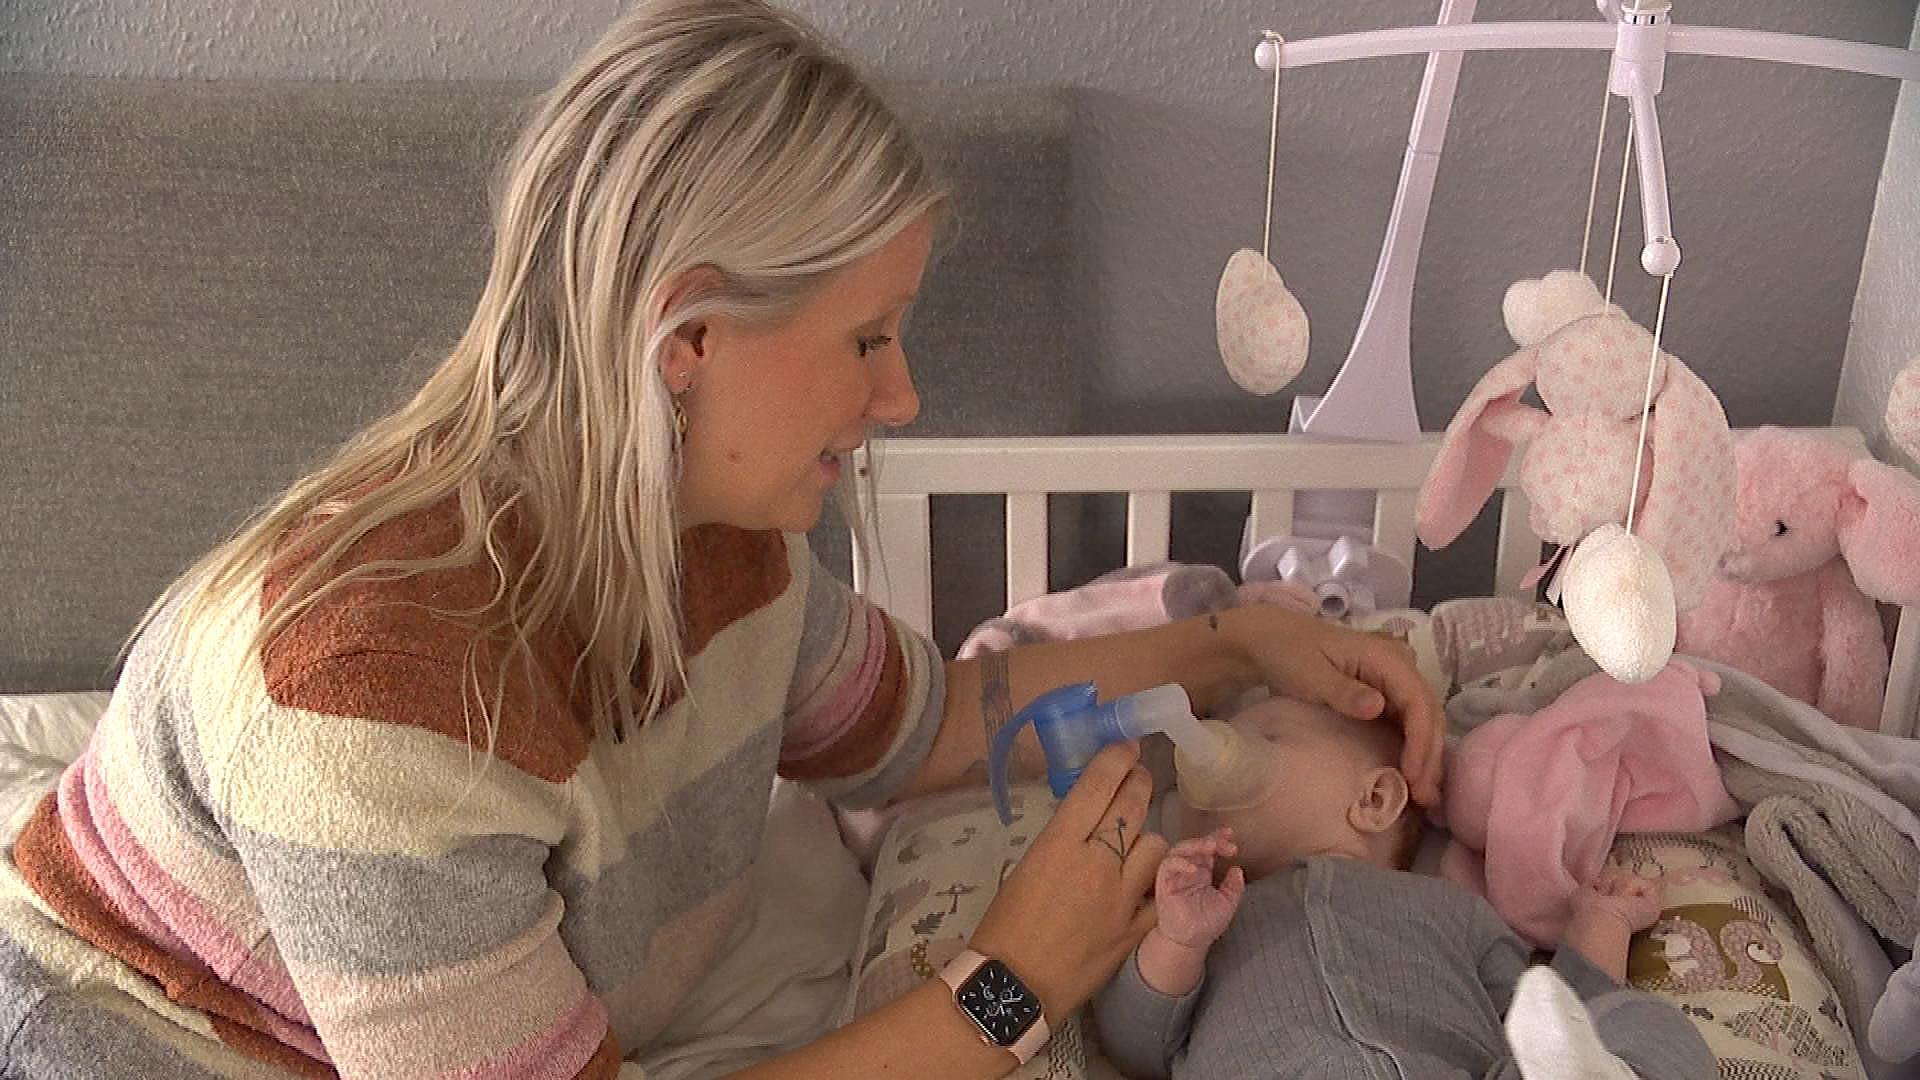 Baby med PFOS i blodet udskrevet fra - men skranter fortsat | TV2 ØST